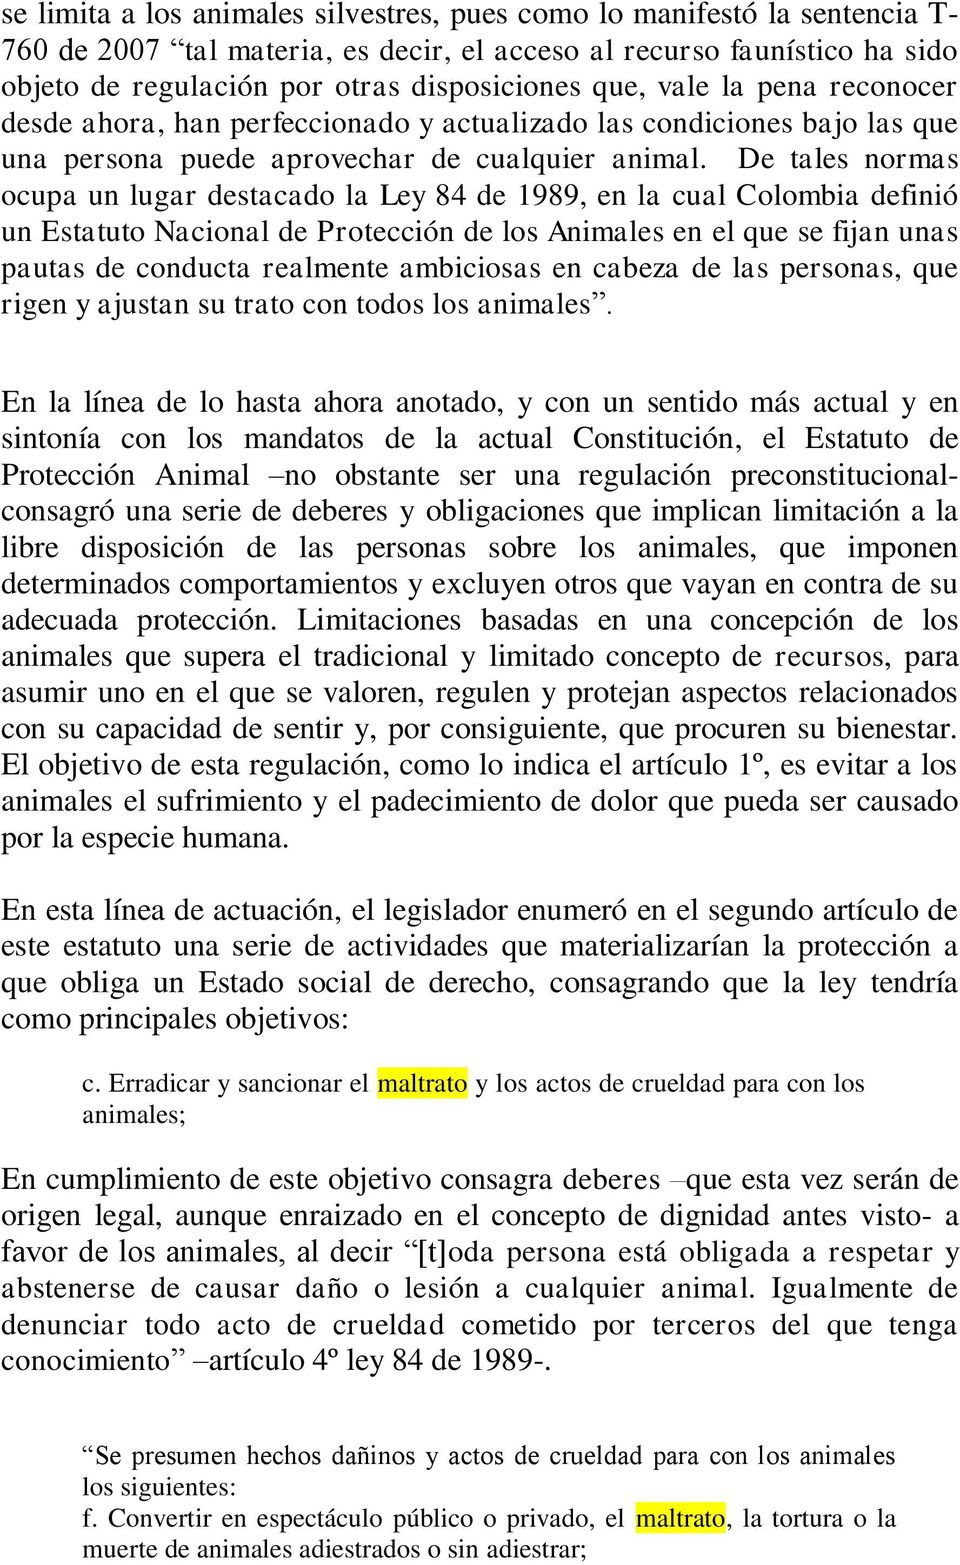 De tales normas ocupa un lugar destacado la Ley 84 de 1989, en la cual Colombia definió un Estatuto Nacional de Protección de los Animales en el que se fijan unas pautas de conducta realmente